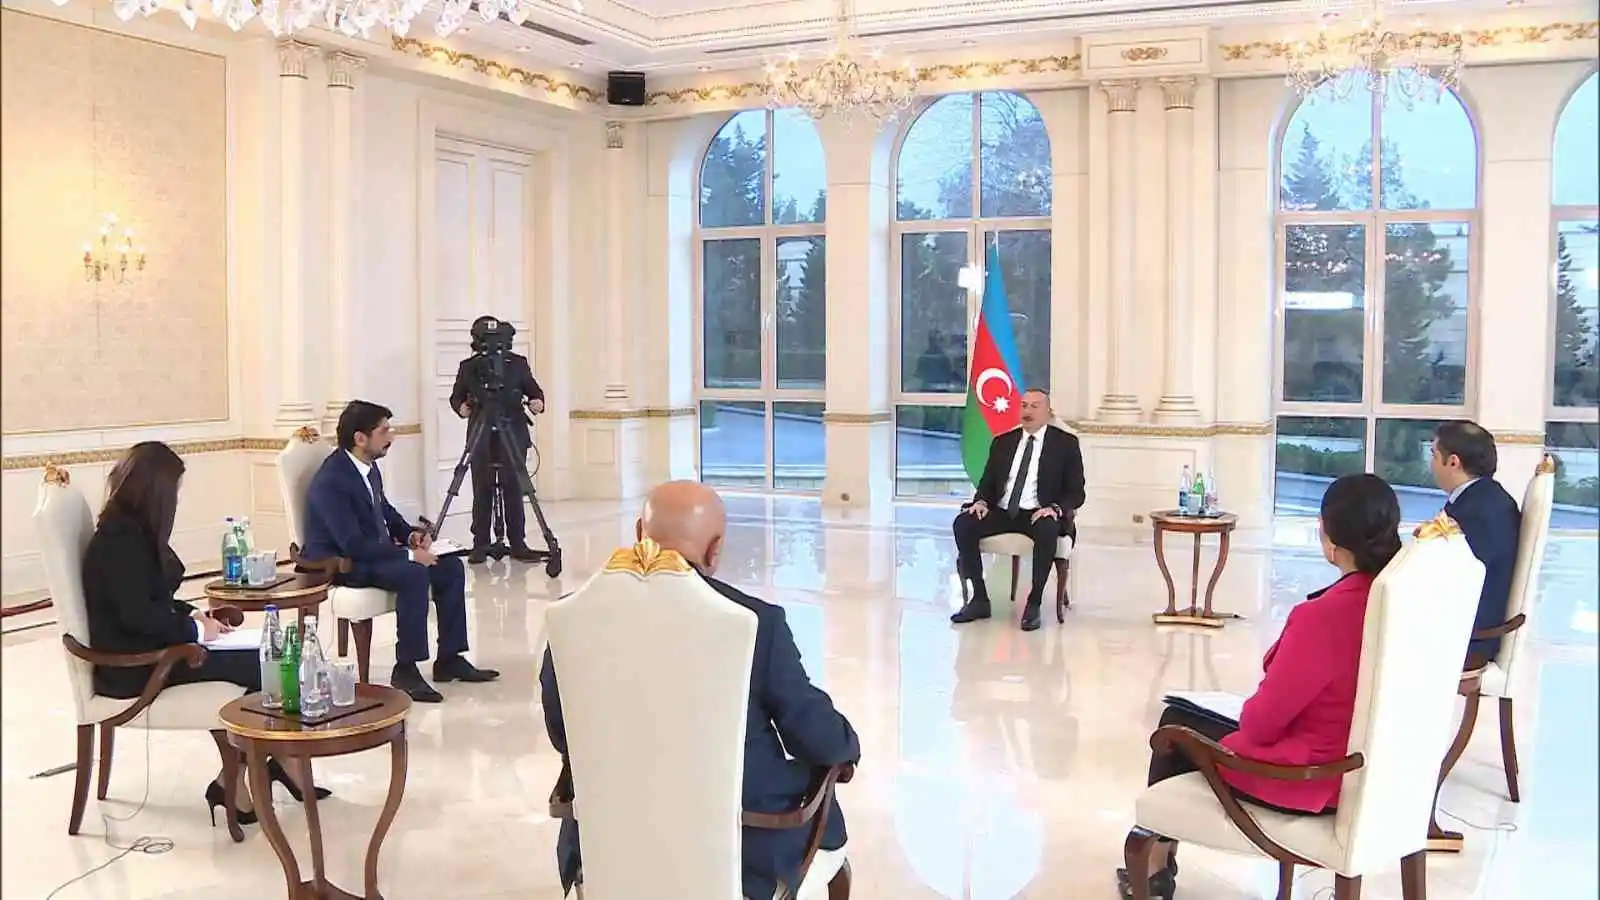 Azerbaycan Cumhurbaşkanı Aliyev: "Ermeni tarafı müzakere sürecini aksatıyor"
